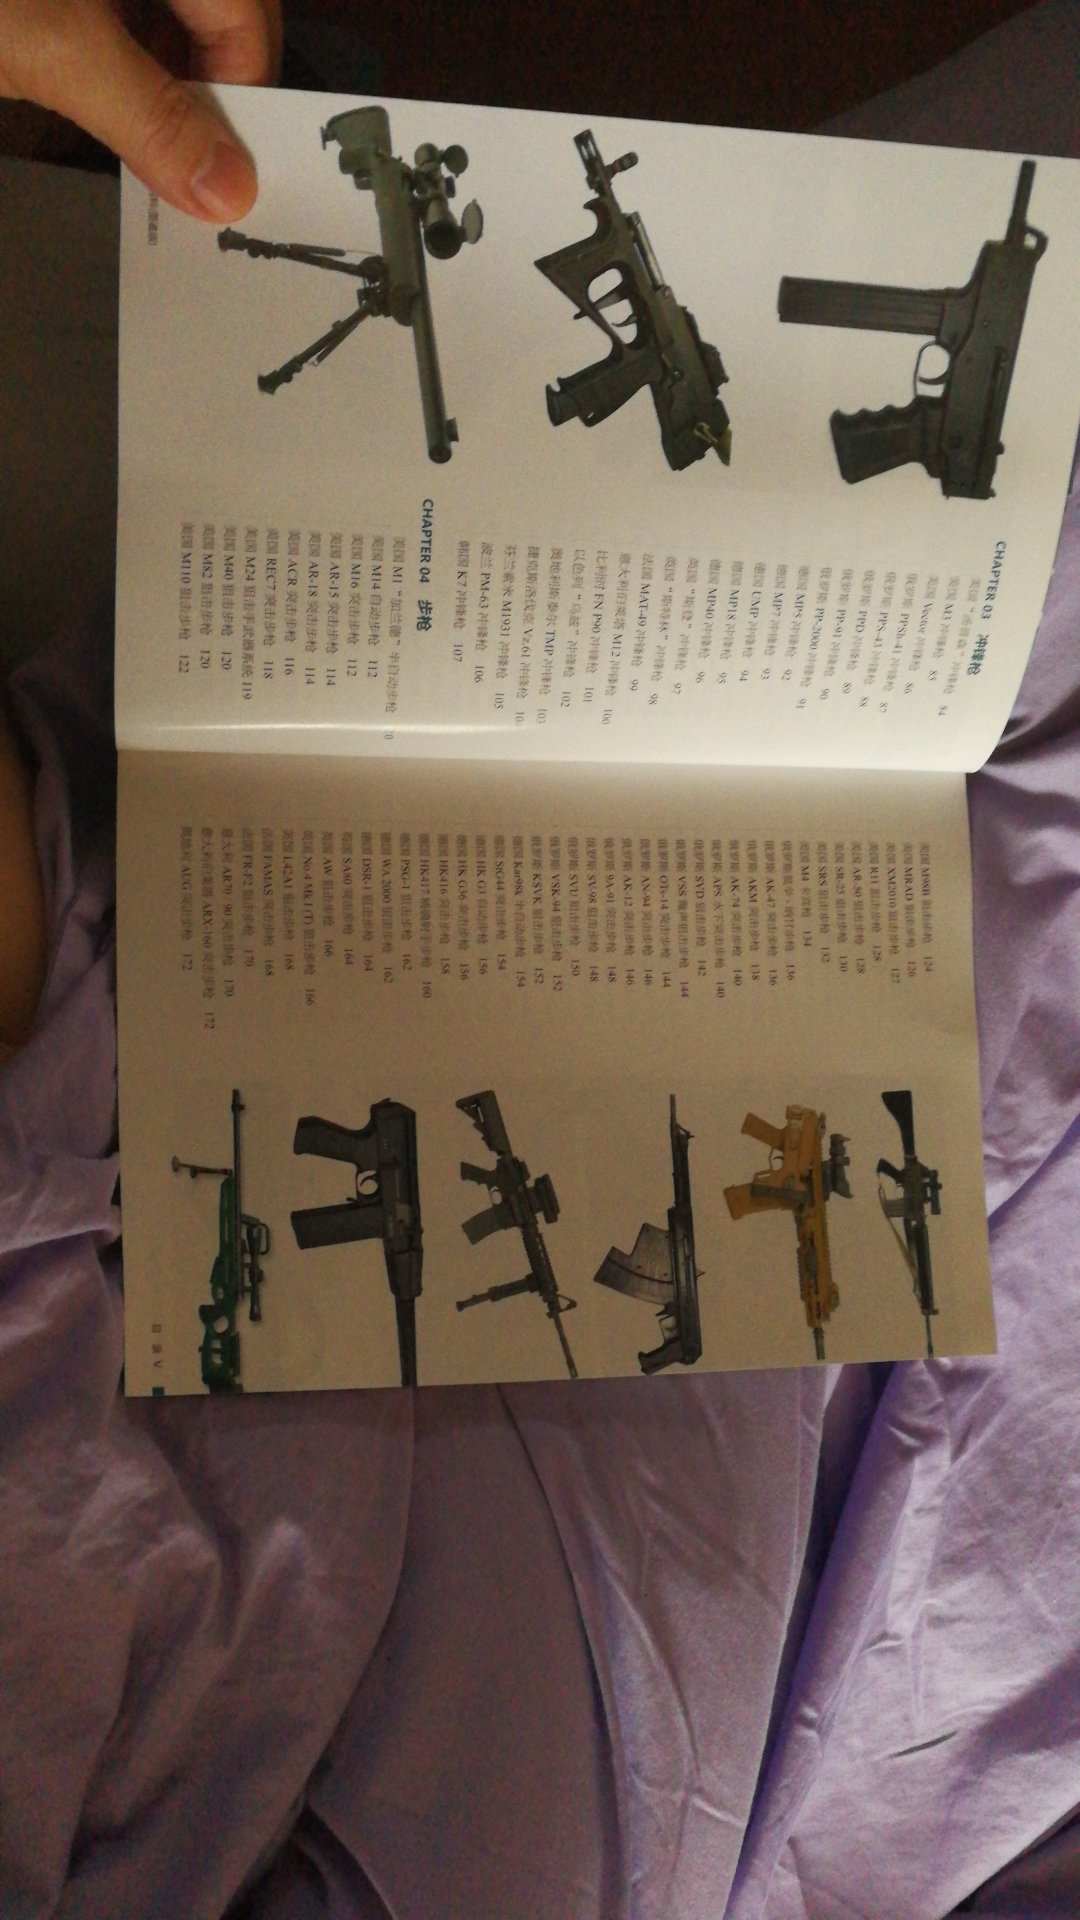 印刷非常精美，算得上是现代枪械图集的大词典，虽然文字描述略简单，但是特别指出图片收集得非常多，是军事迷和枪迷的收藏之作。